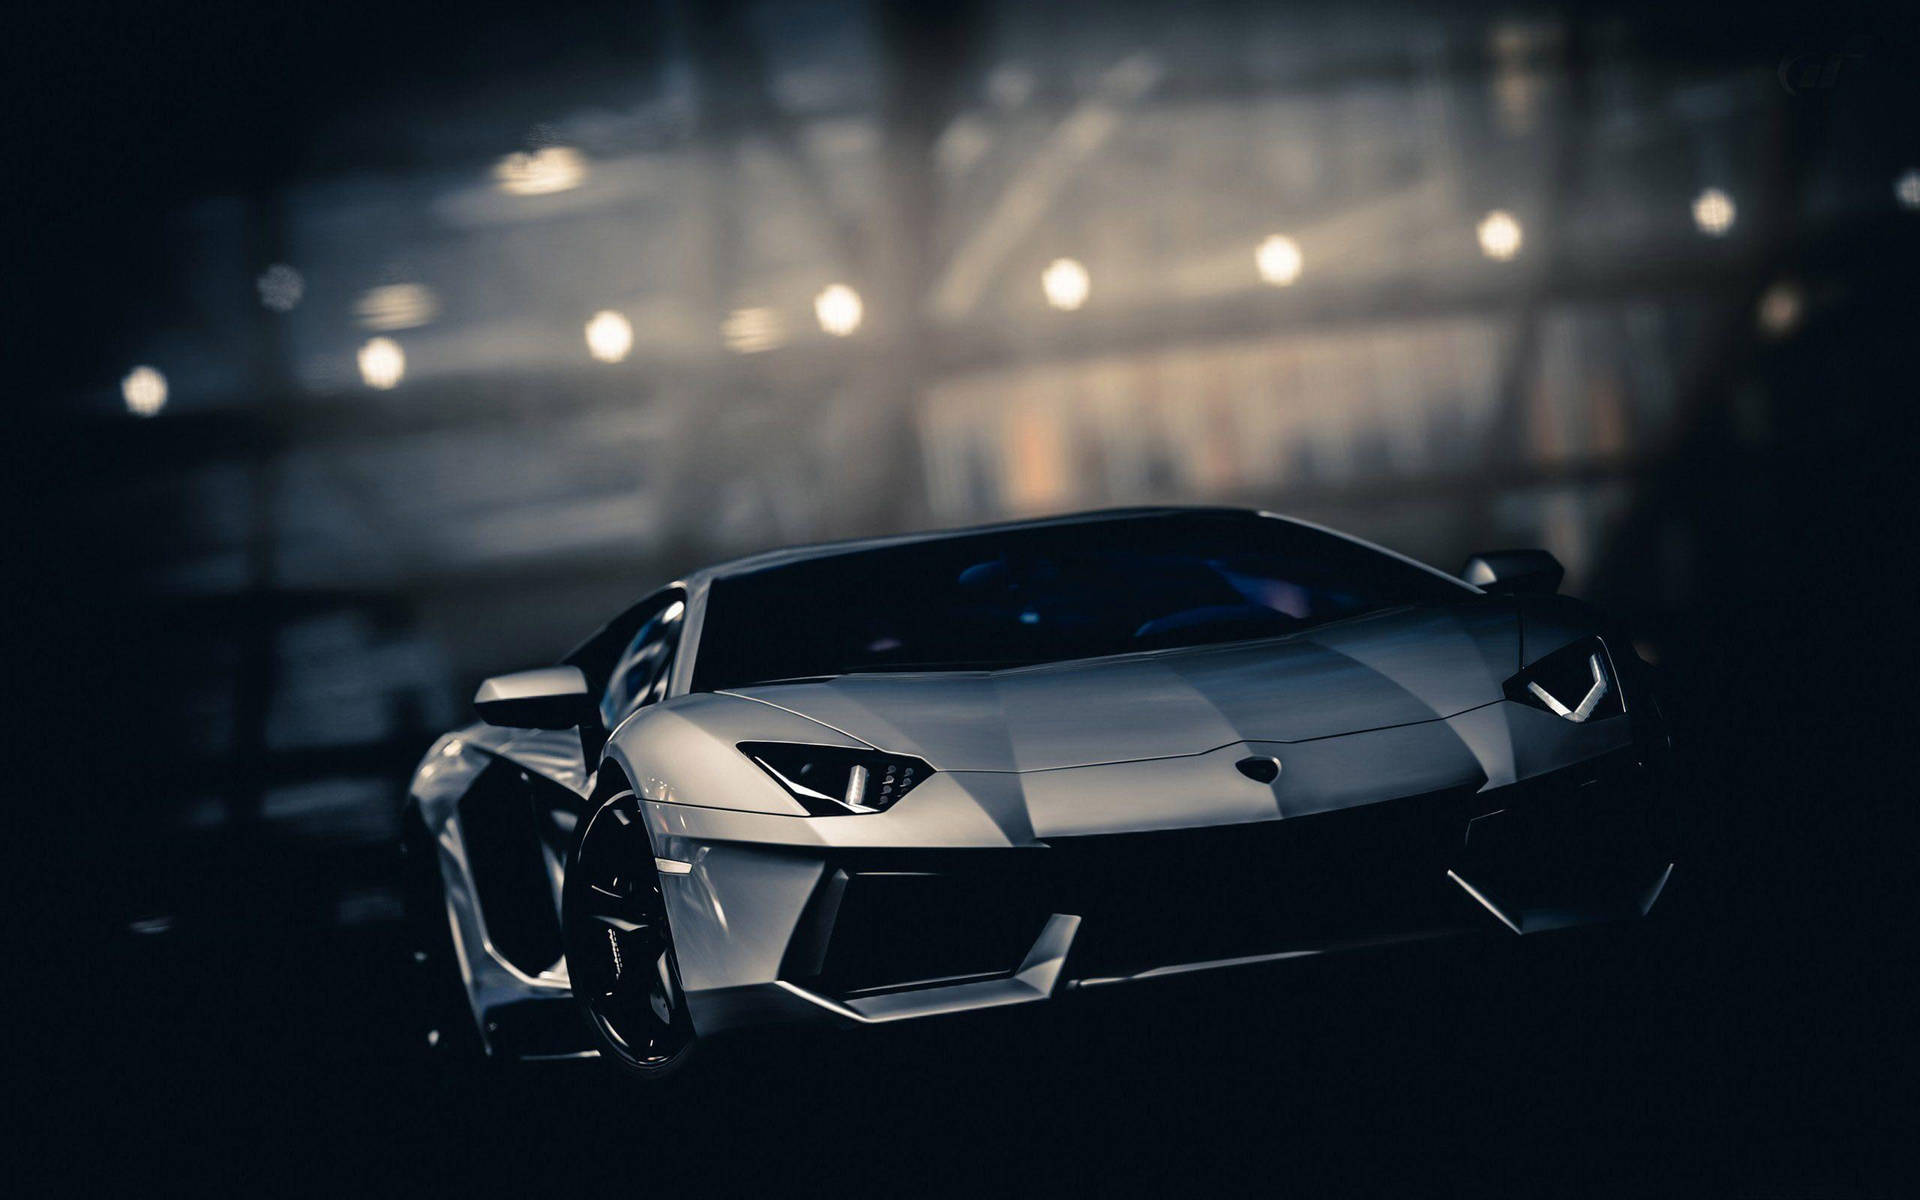 Svalabilar: Silver Lamborghini Wallpaper